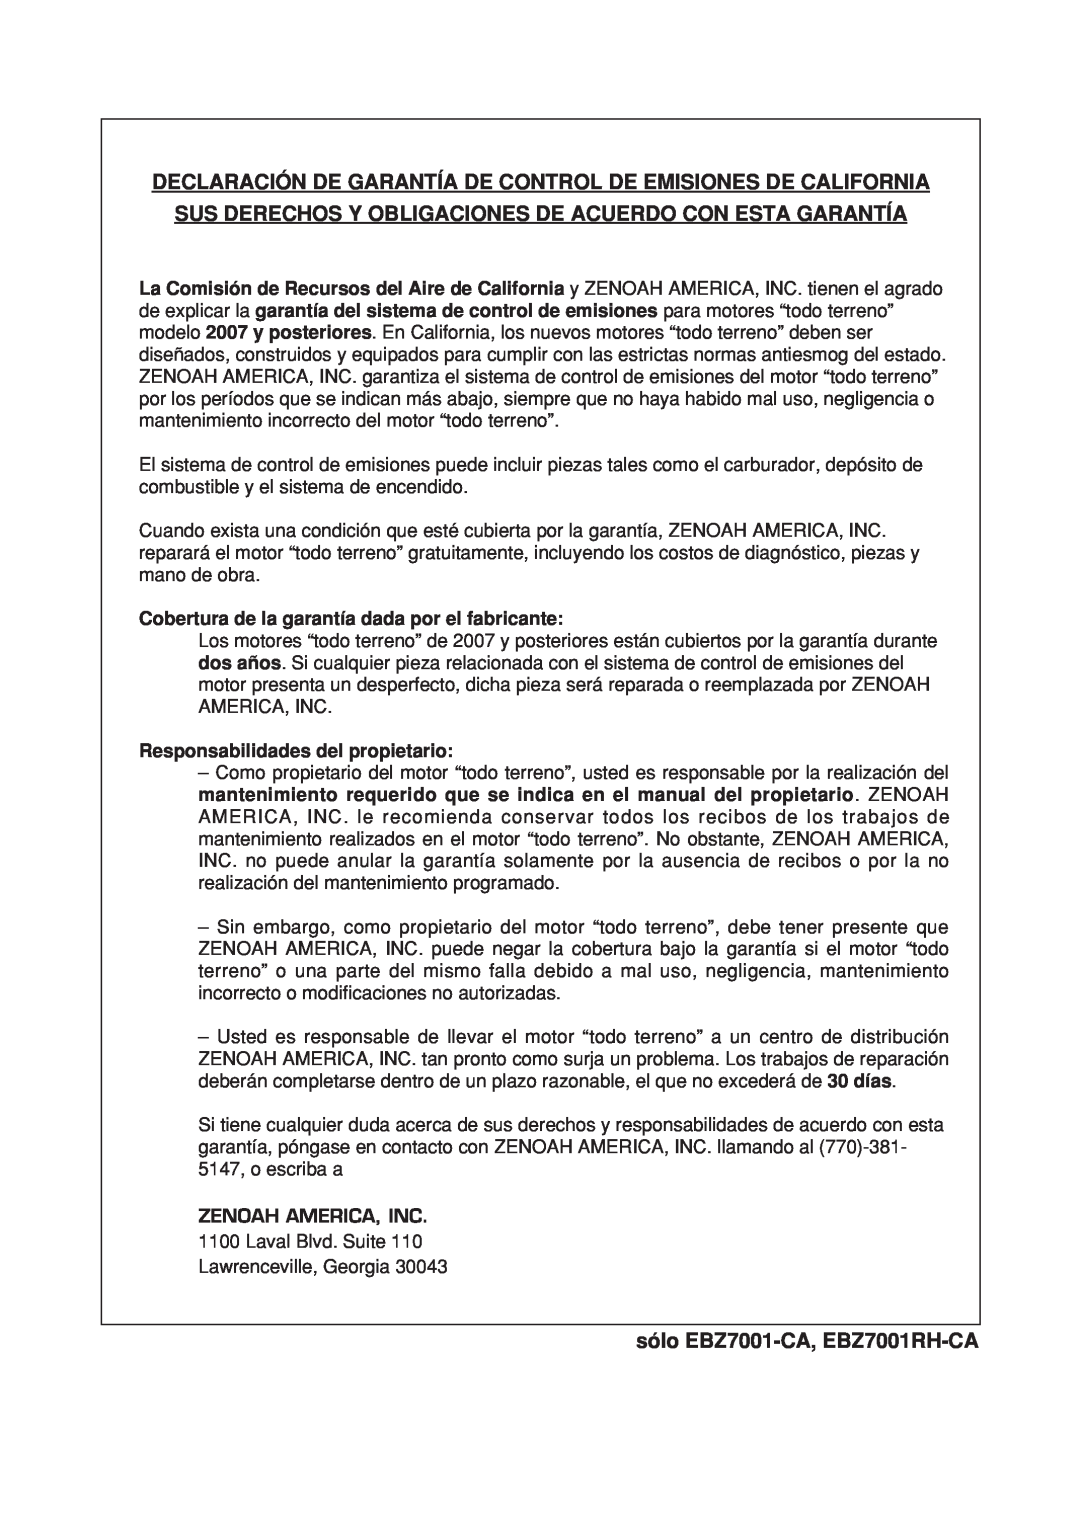 Zenoah manual Declaración De Garantía De Control De Emisiones De California, sólo EBZ7001-CA, EBZ7001RH-CA 